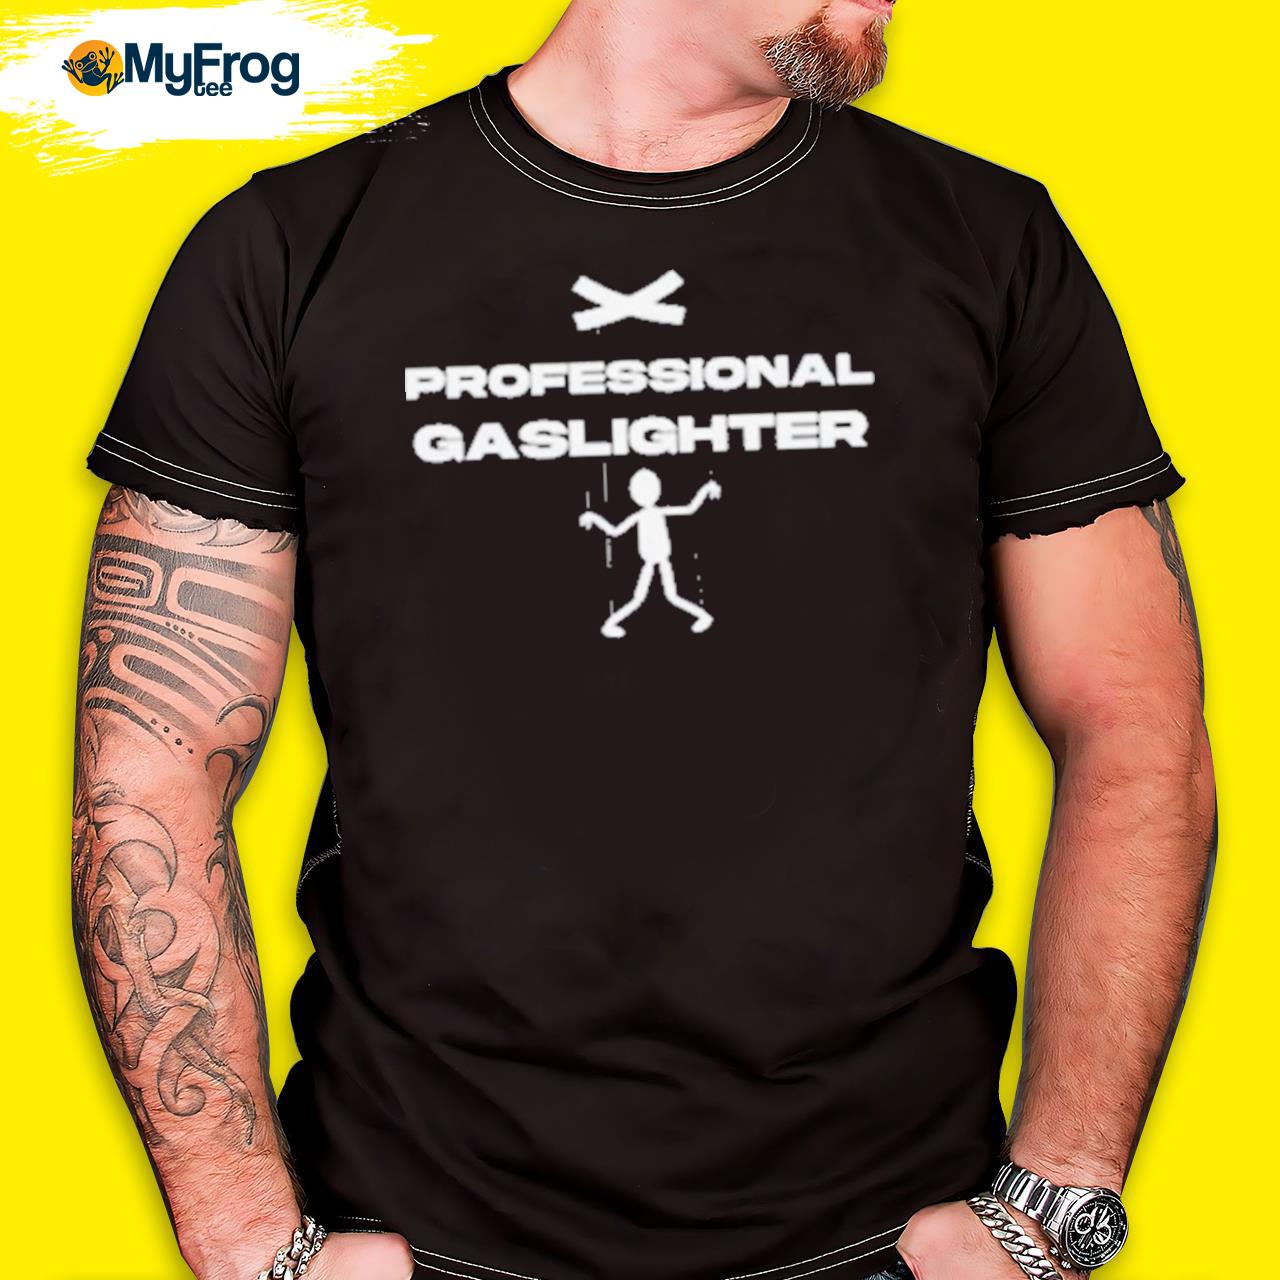 Professional gaslighter shirt